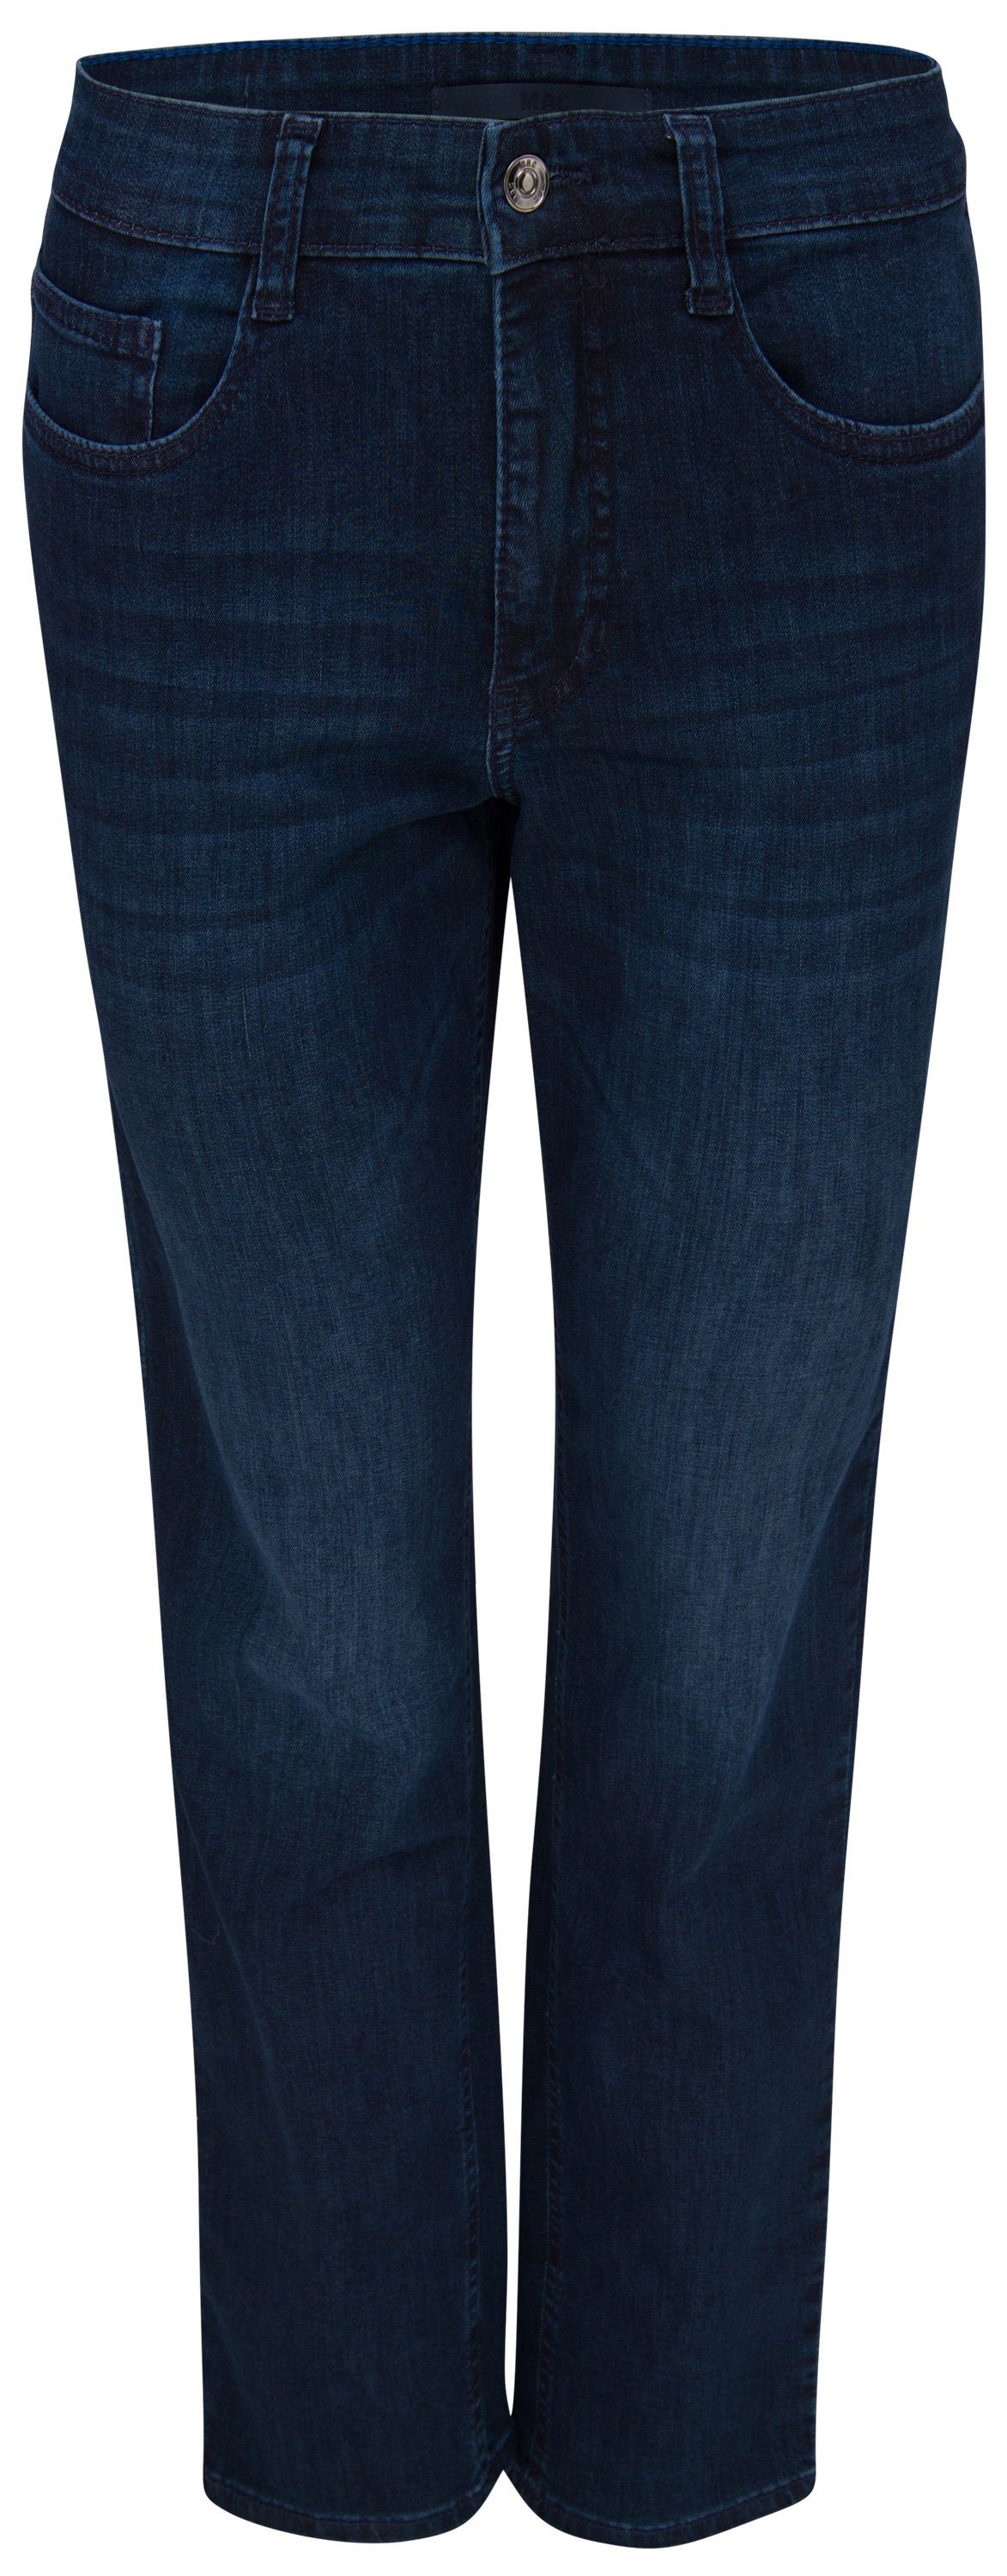 Shop zu supergünstigen Preisen MAC Stretch-Jeans MAC STELLA authentic D818 5100-90-0380 blue used